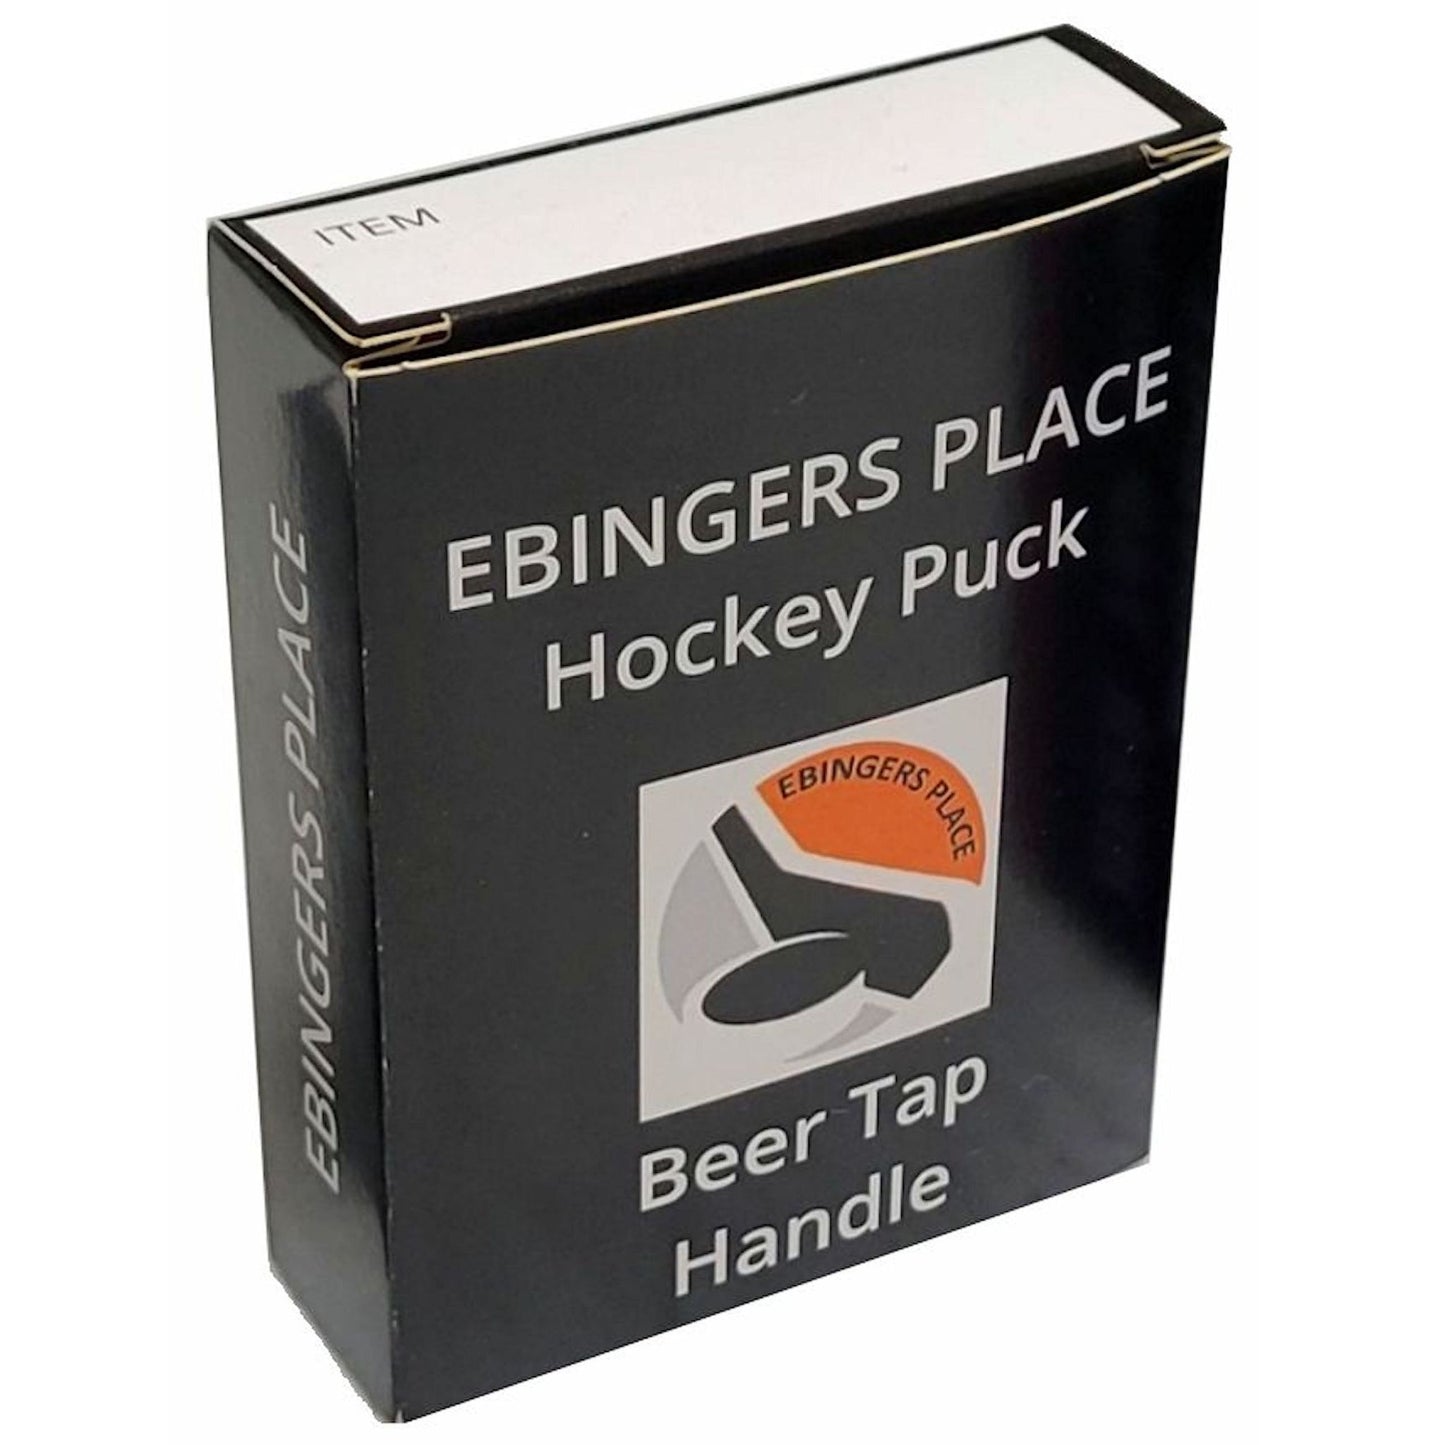 Boston Bruins Clone Series Hockey Puck Beer Tap Handle